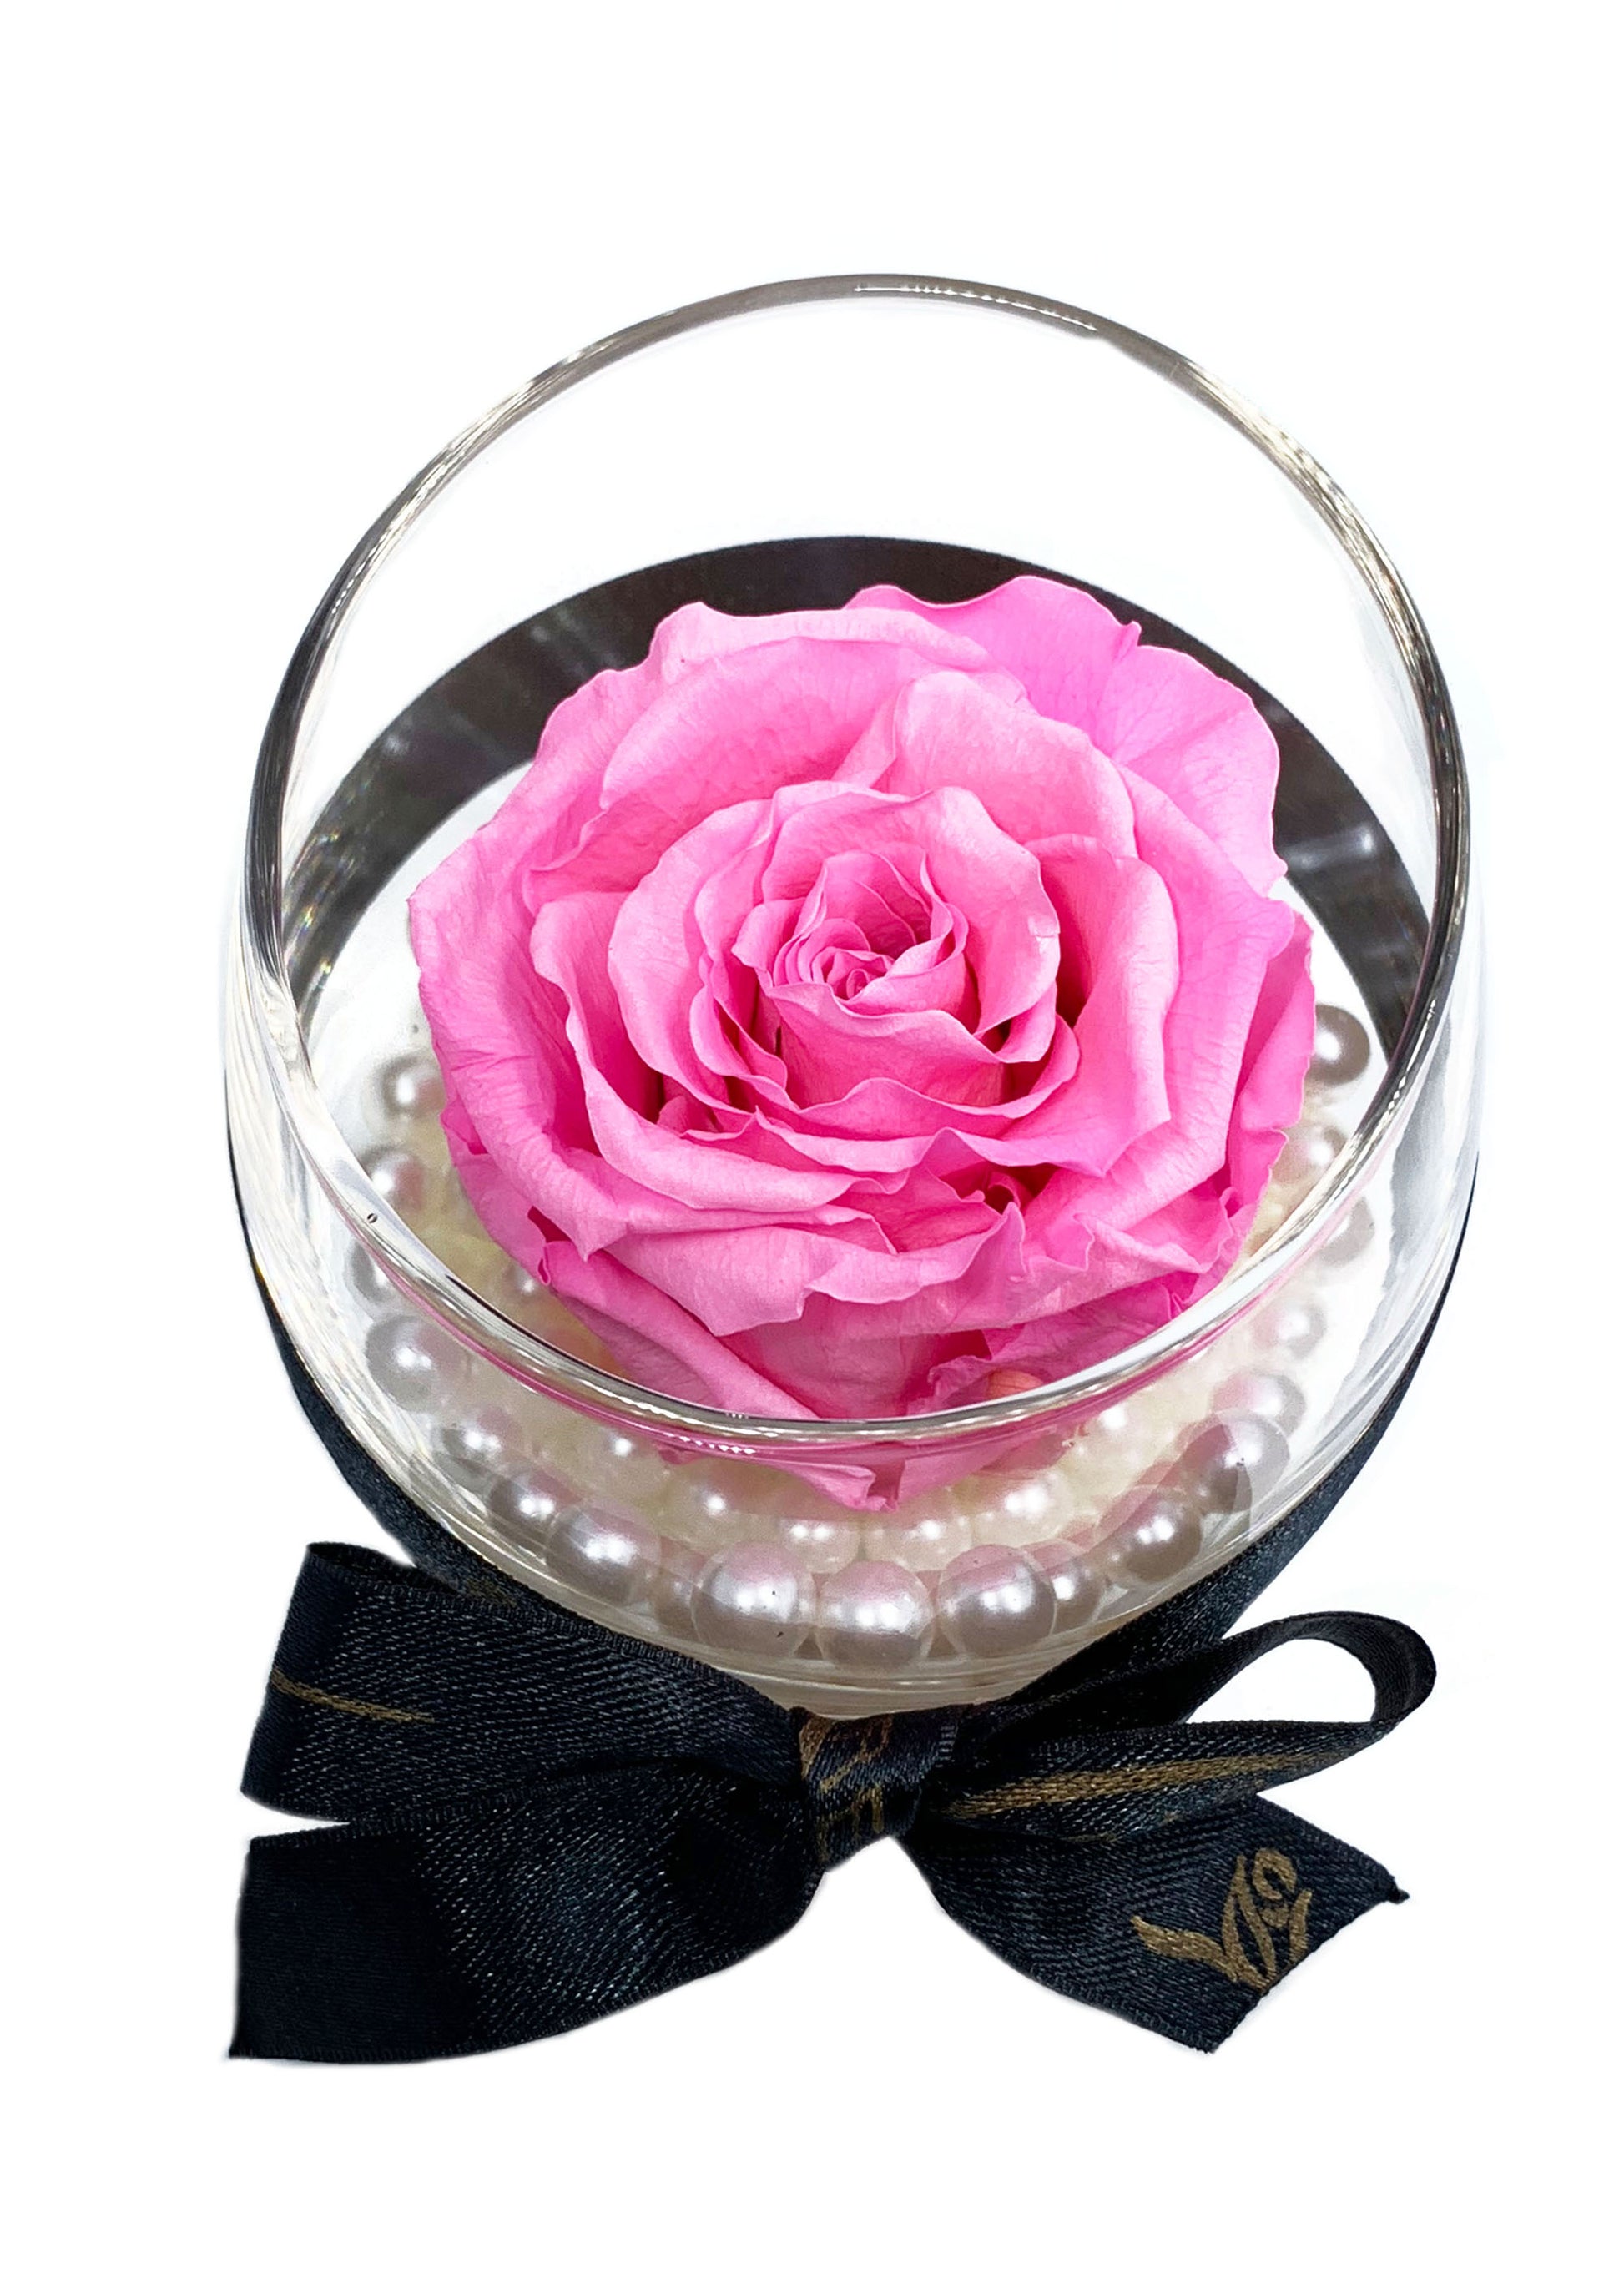 Votive - Single Preserved Rose - forever roses store 